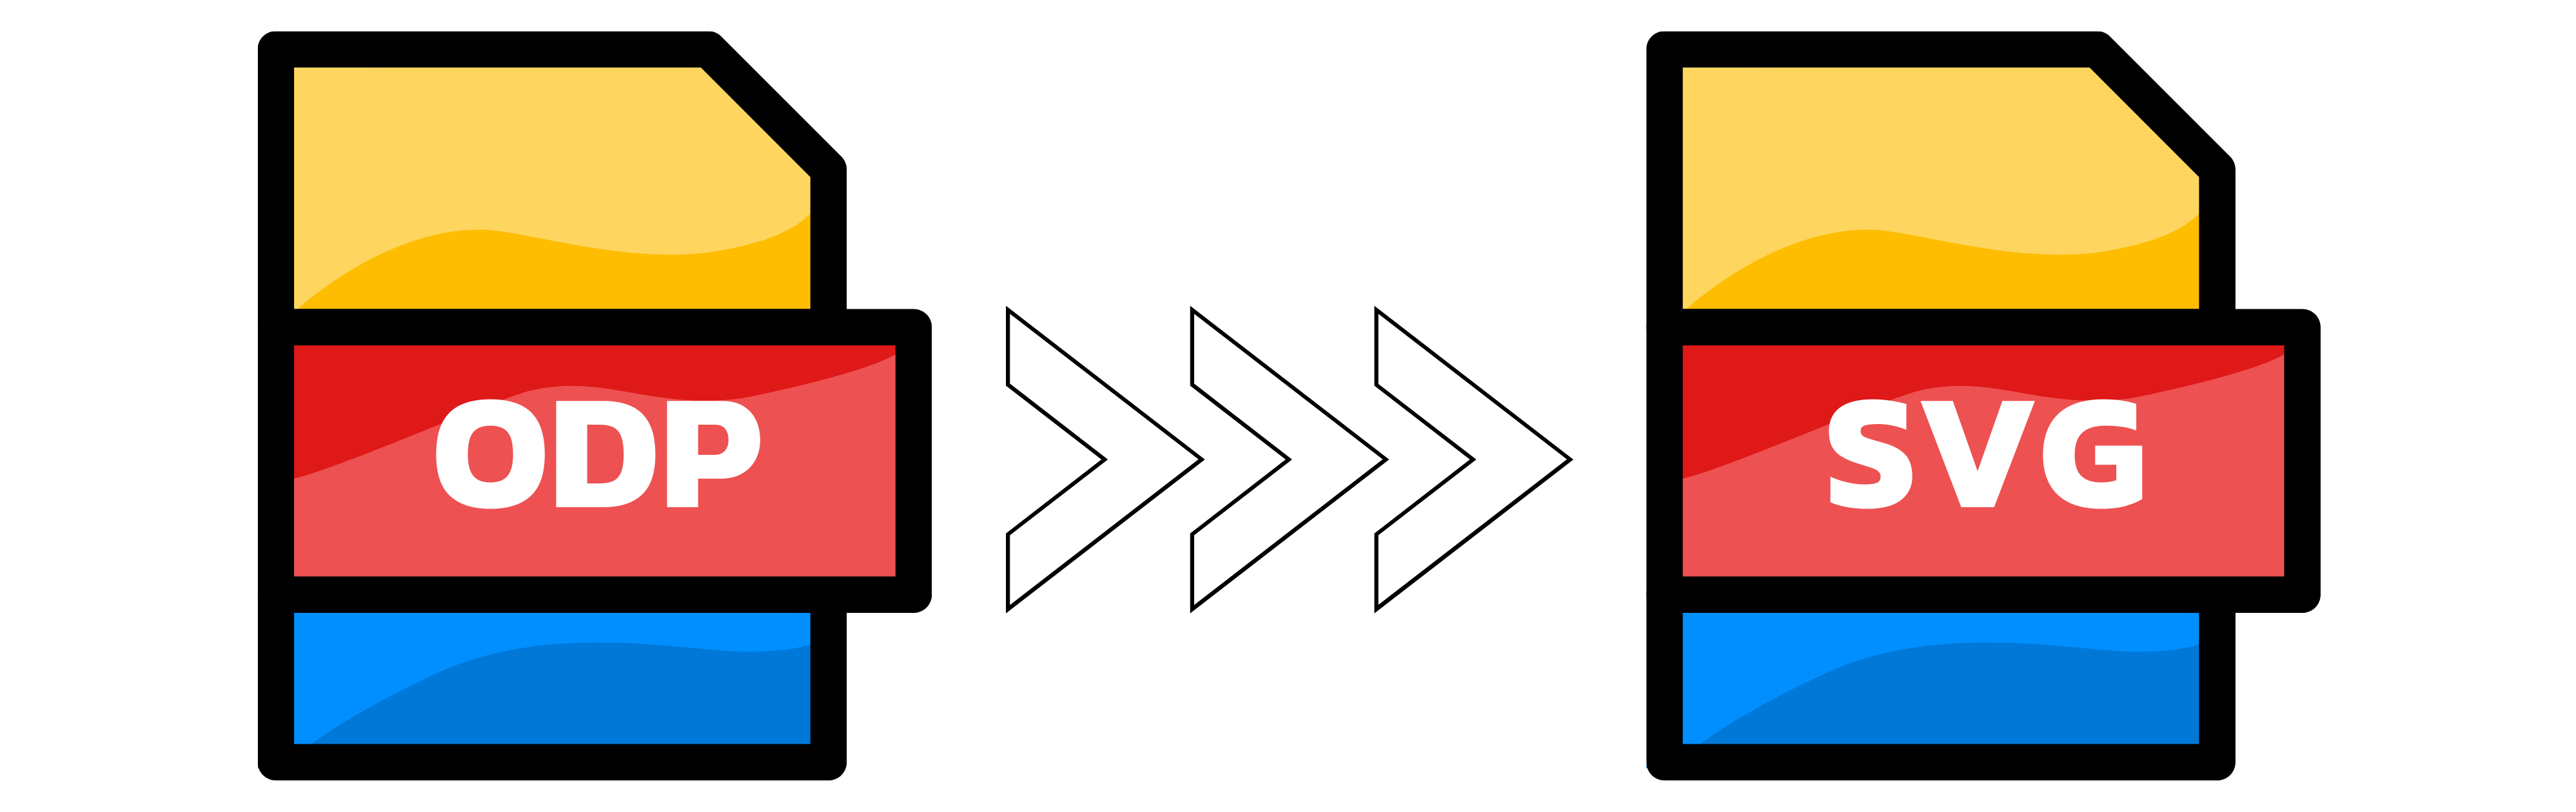 Ilustração: Conversão de ODP para SVG